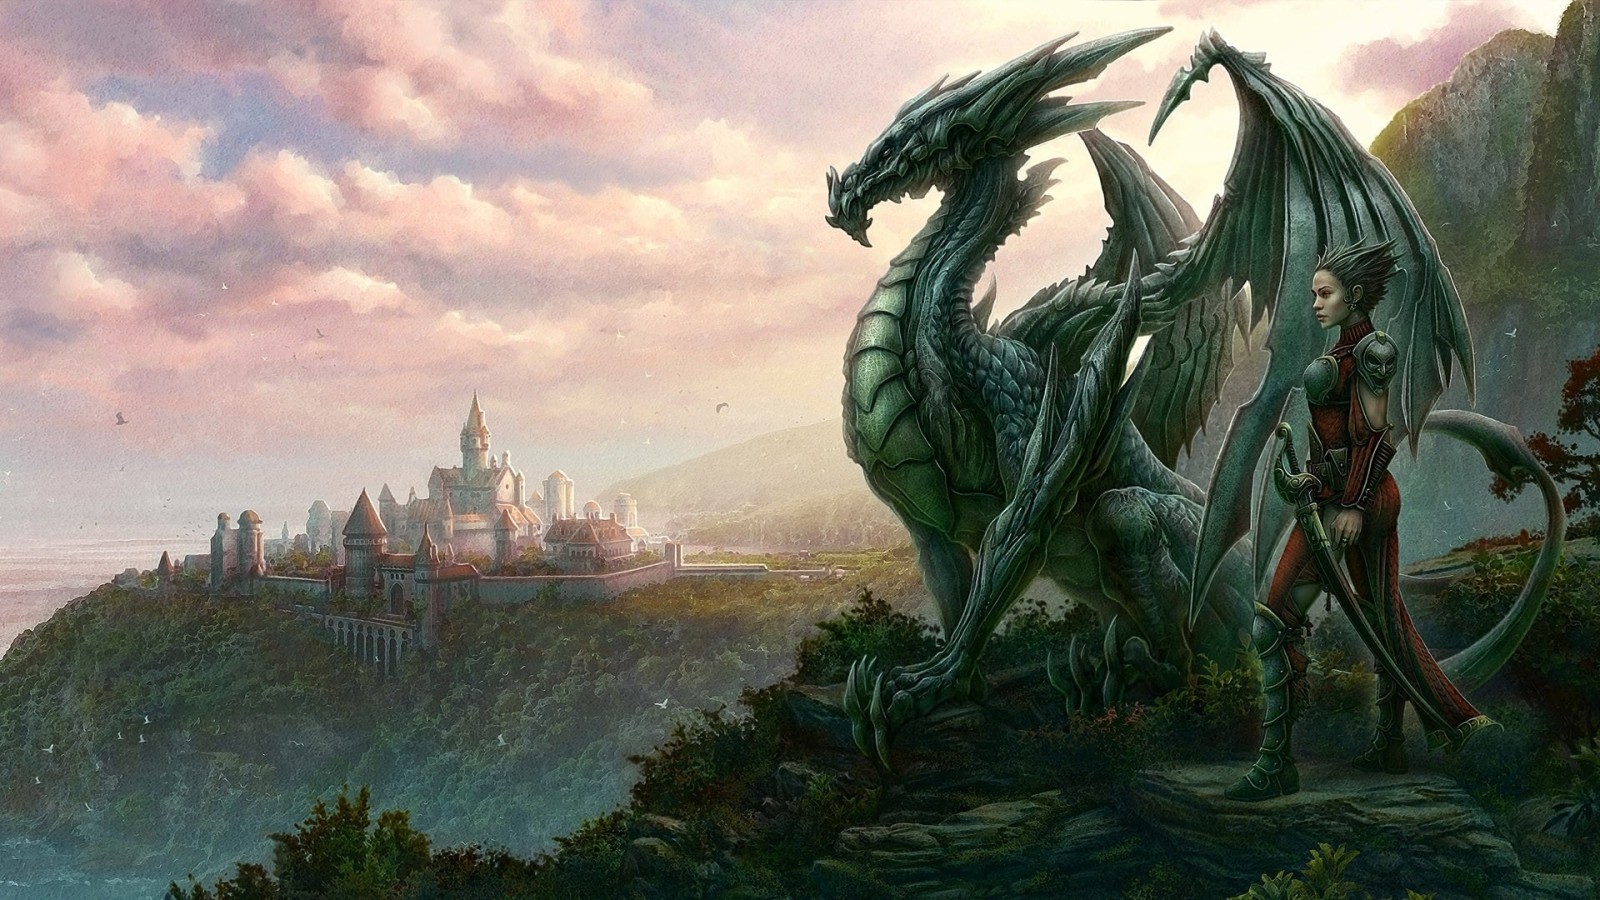 47+] Dragon City Wallpapers - WallpaperSafari